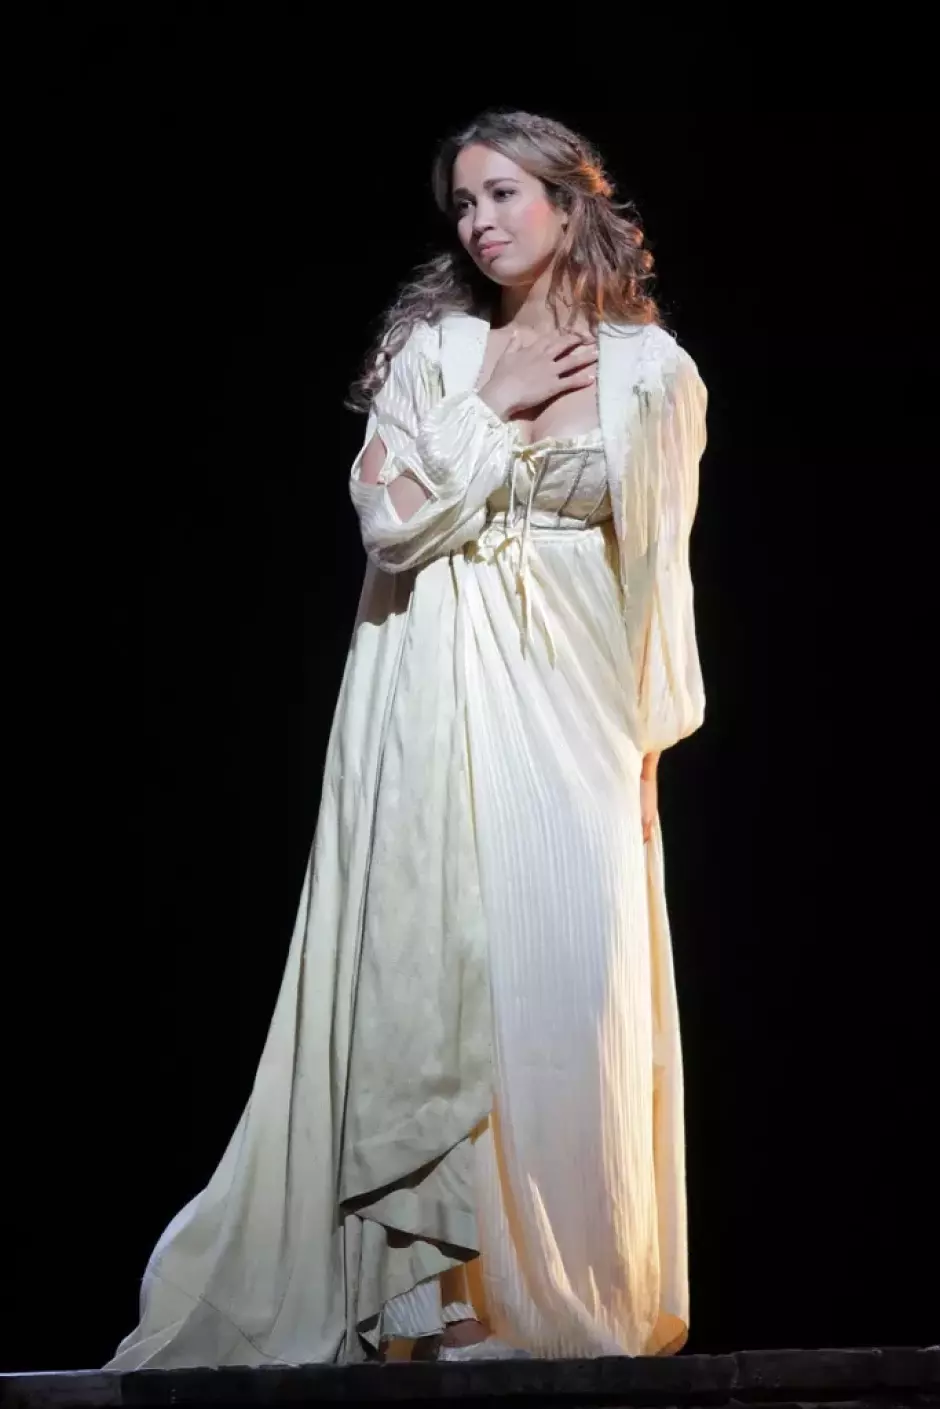 Nadine Sierra ya interpretó a Julieta en 2019 en la San Francisco Opera, y ahora volverá a hacerlo en Bilbao